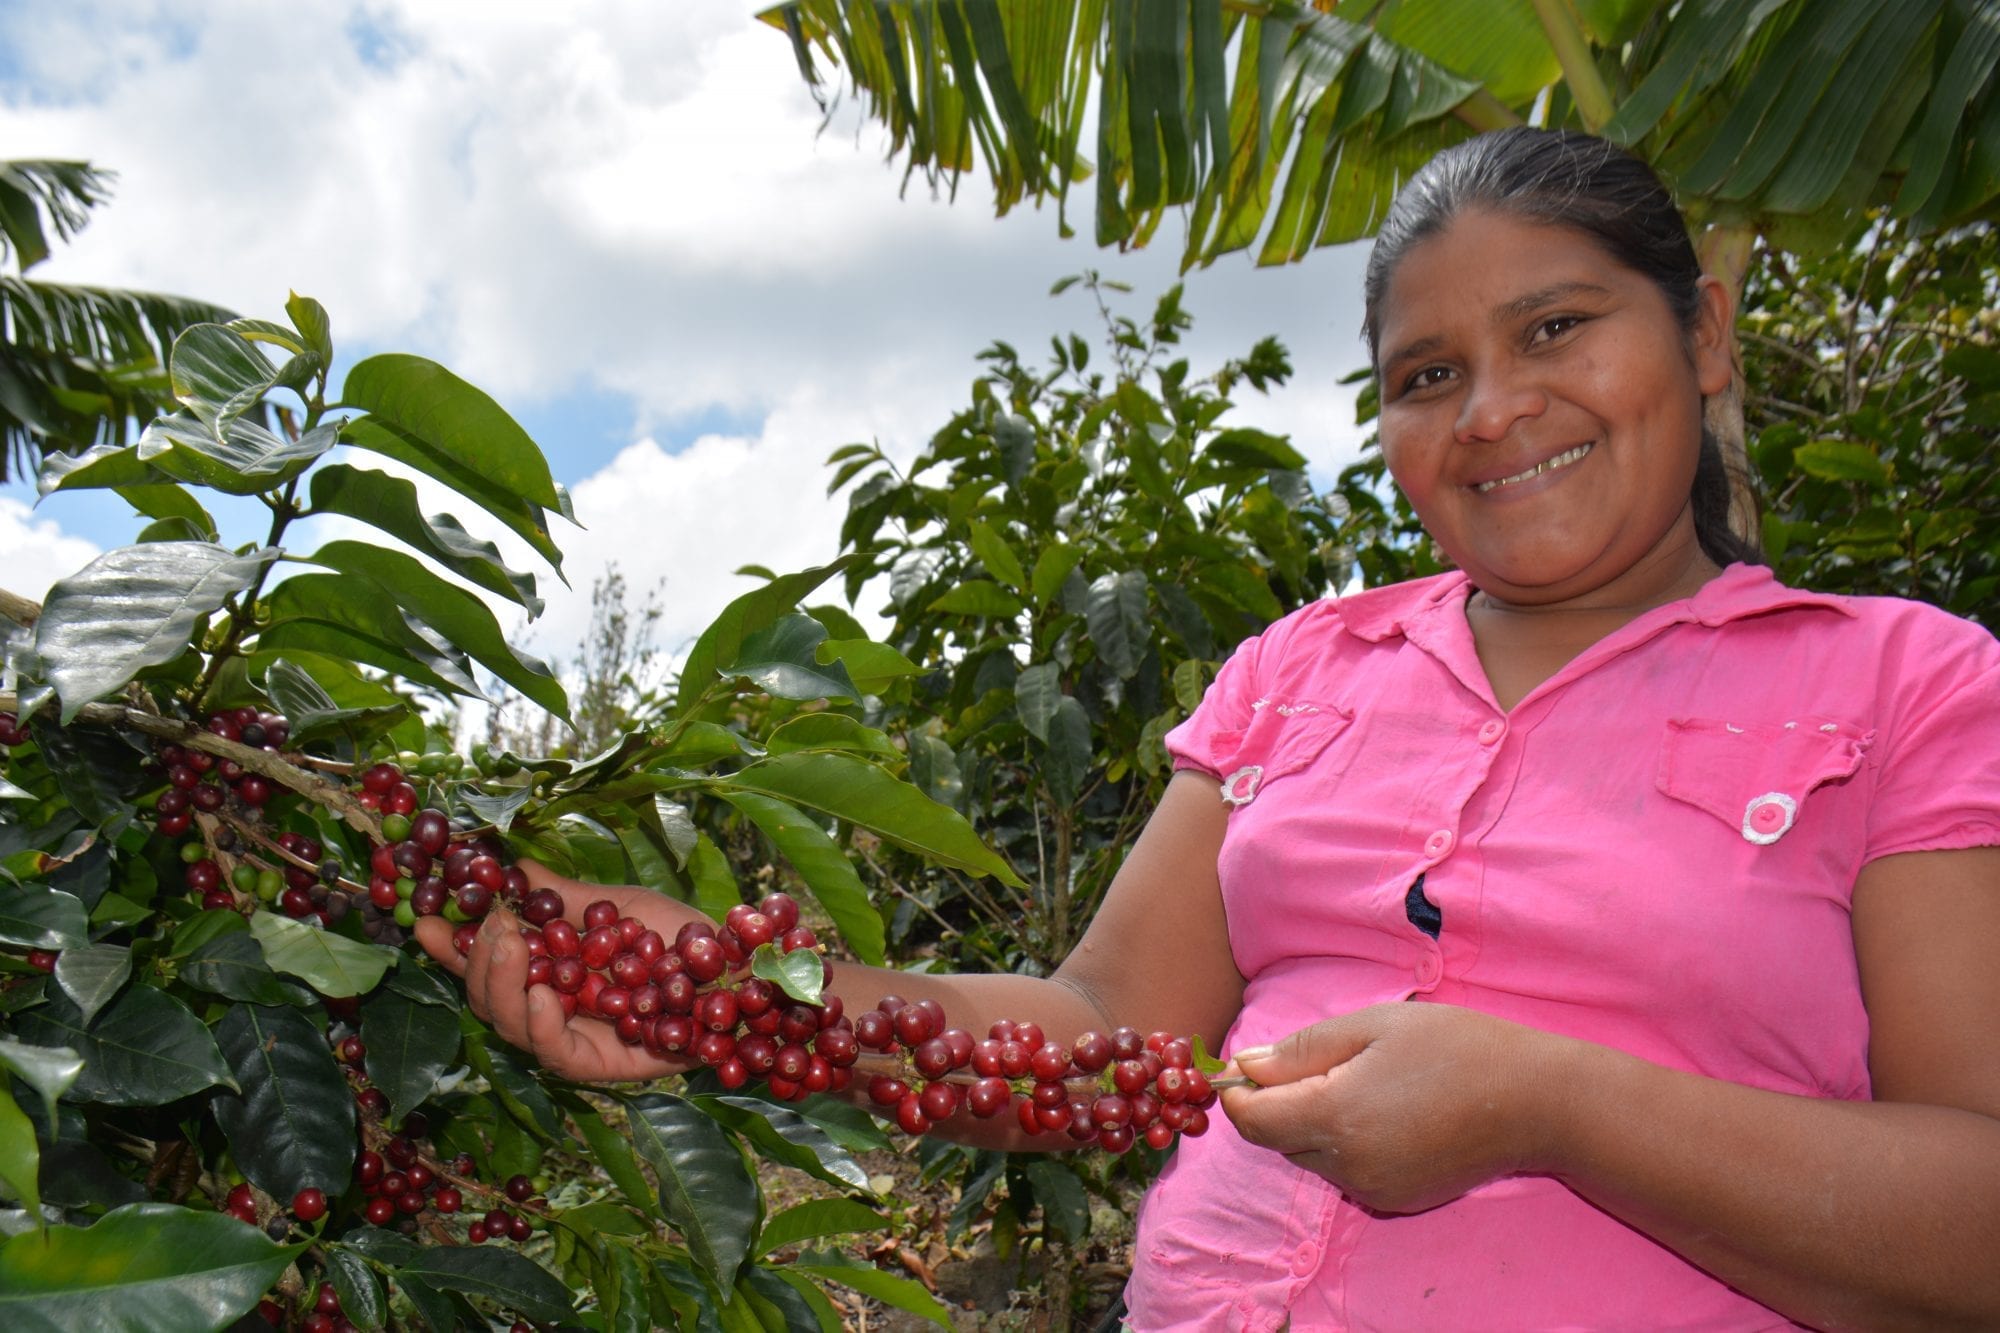 Reyna Garcia is a coffee farmer in Honduras